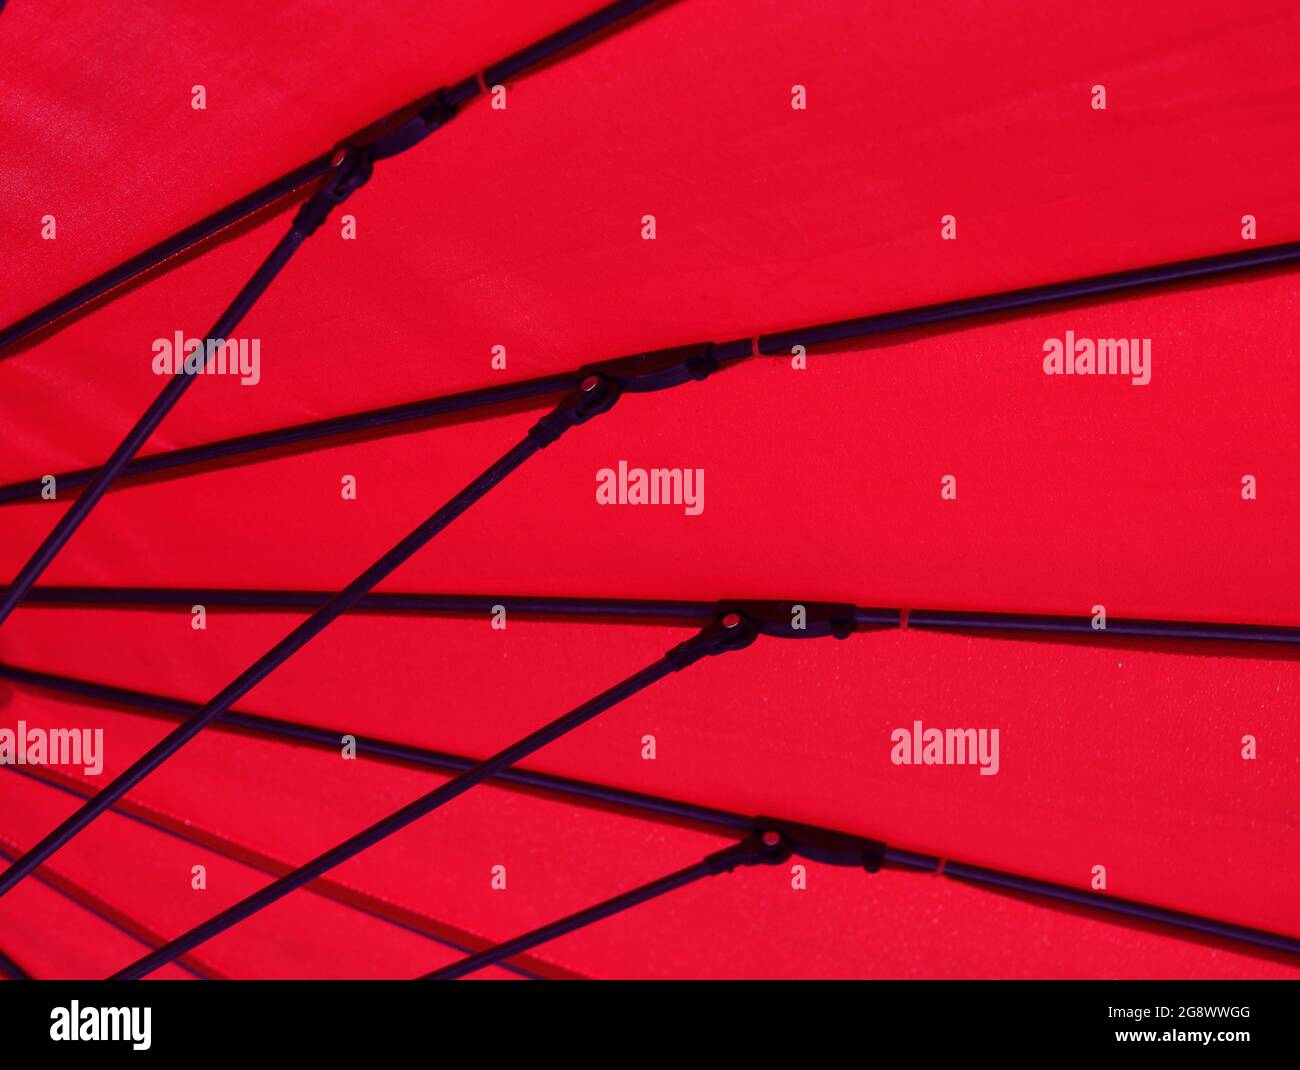 Image géométrique du dessous d'un parasol en tissu rouge Banque D'Images